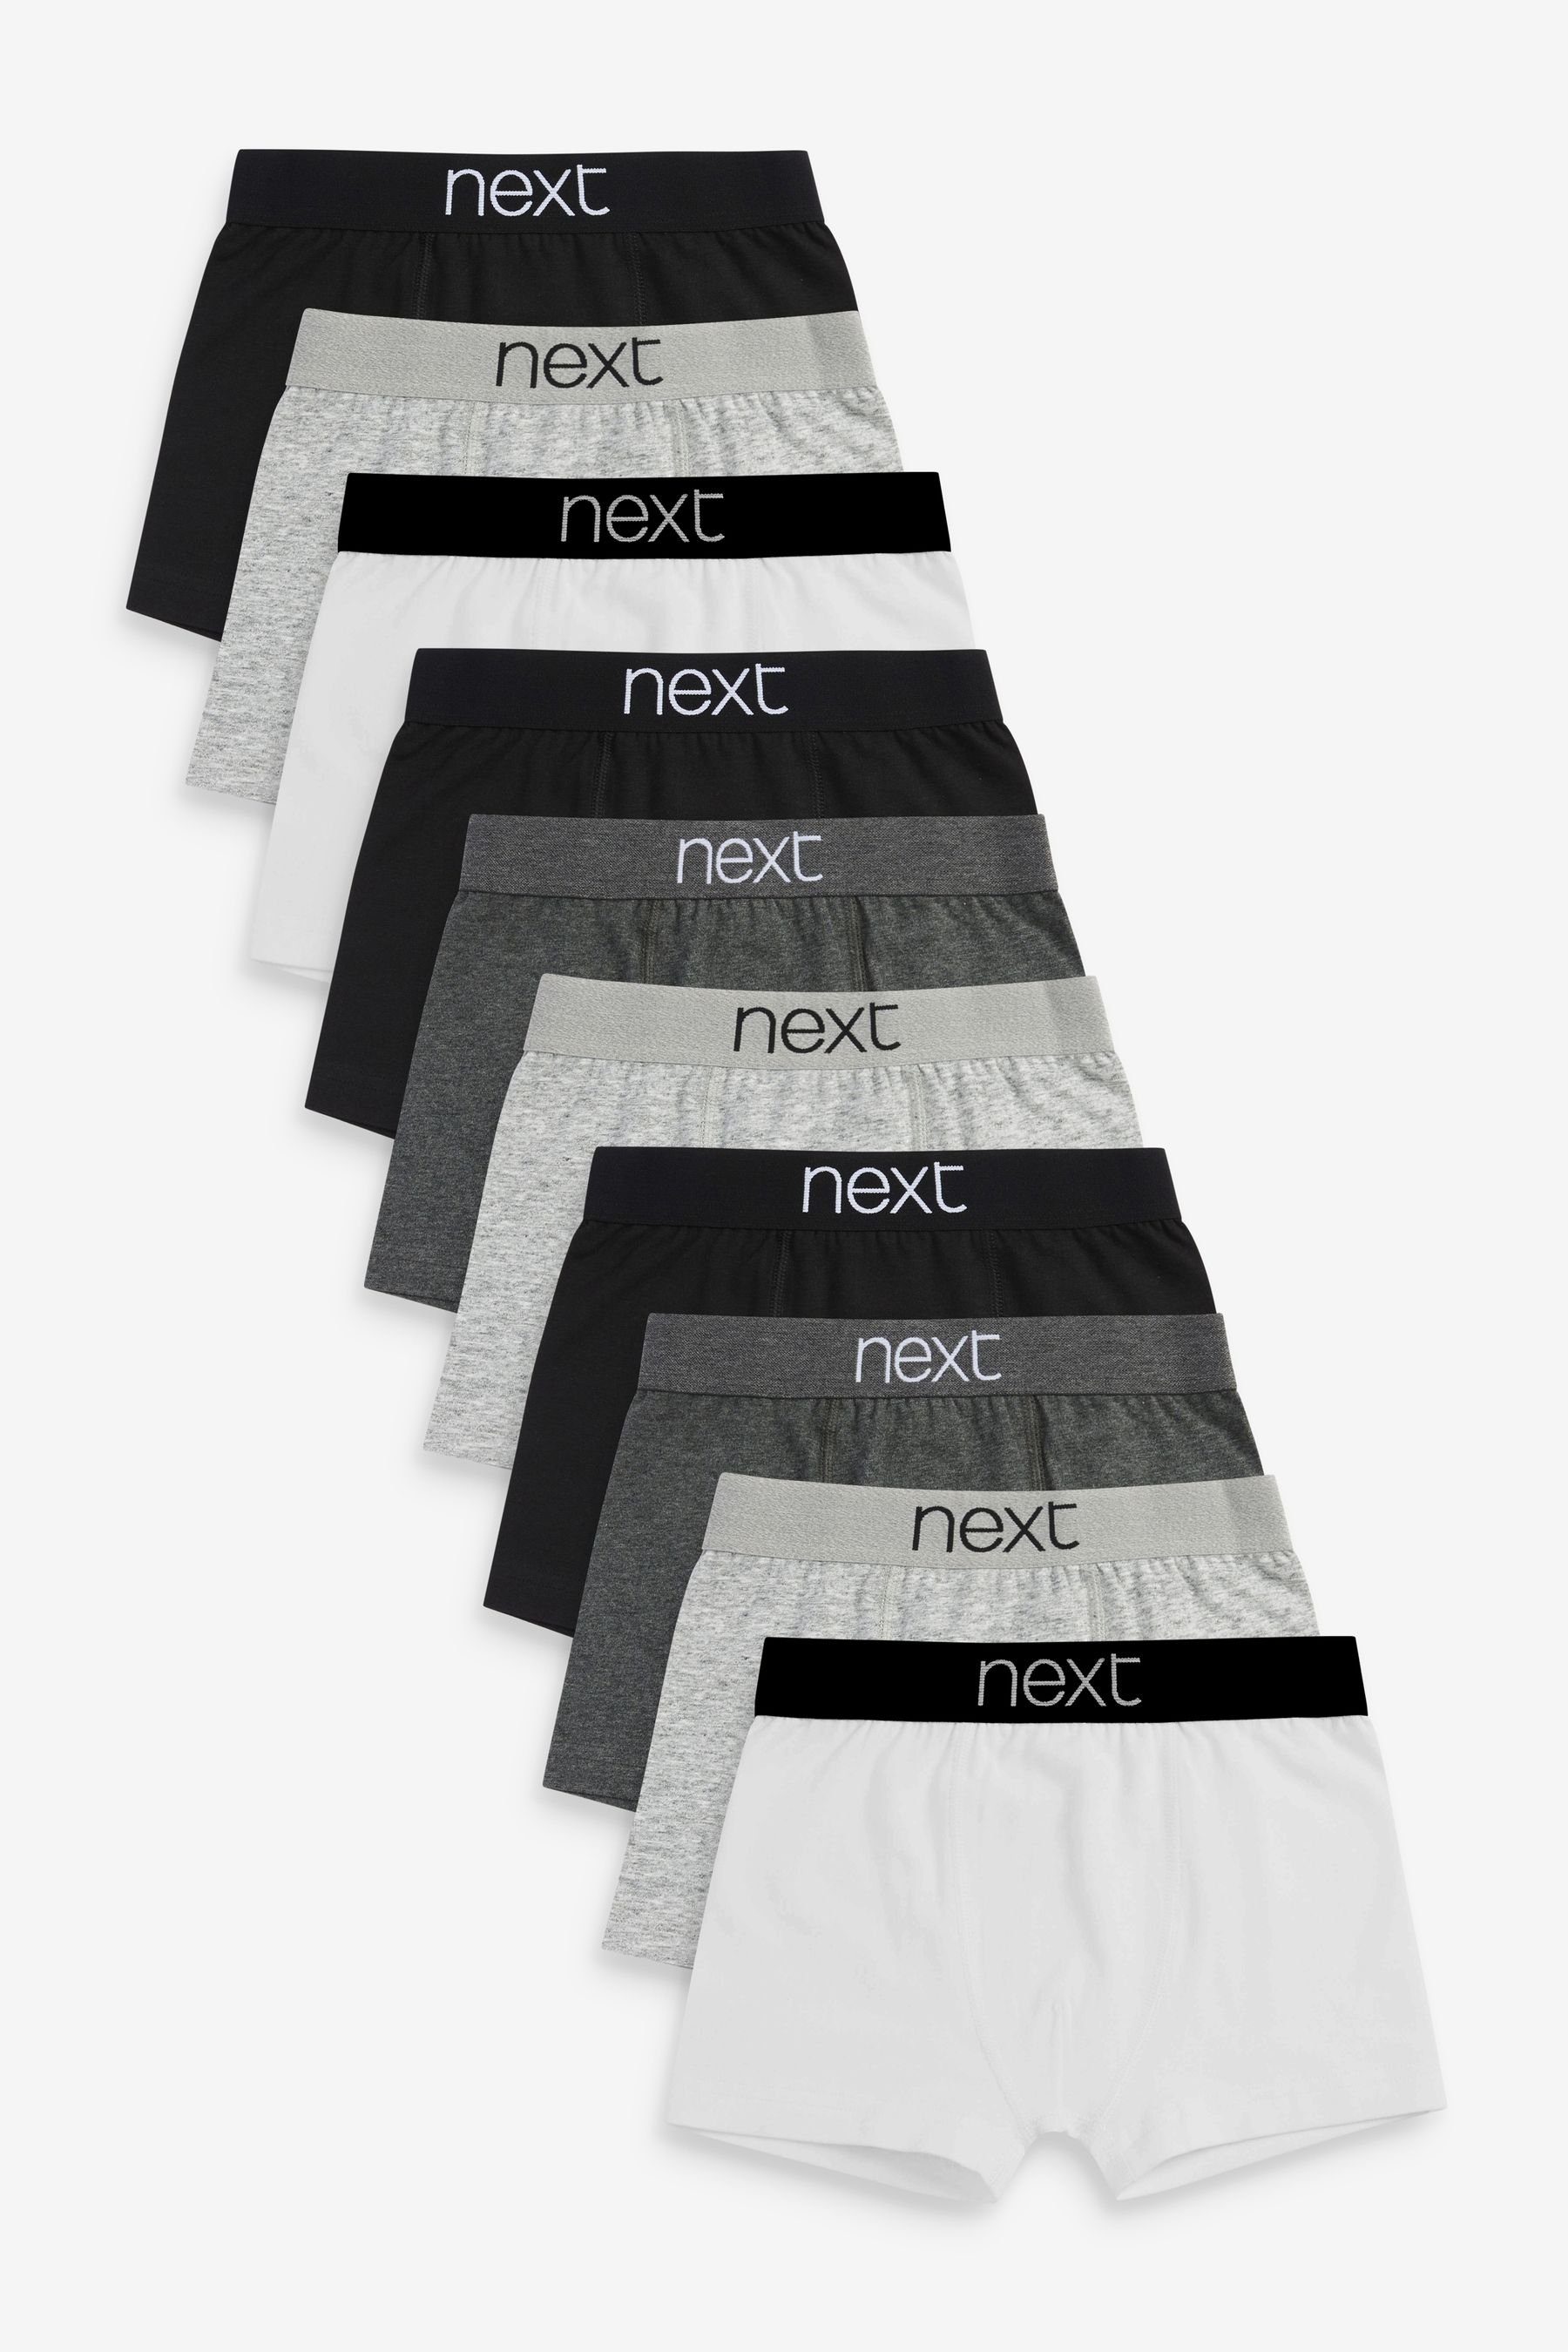 Next Trunk Unterhosen, 10er-Pack (10-St) Grey/Black/White